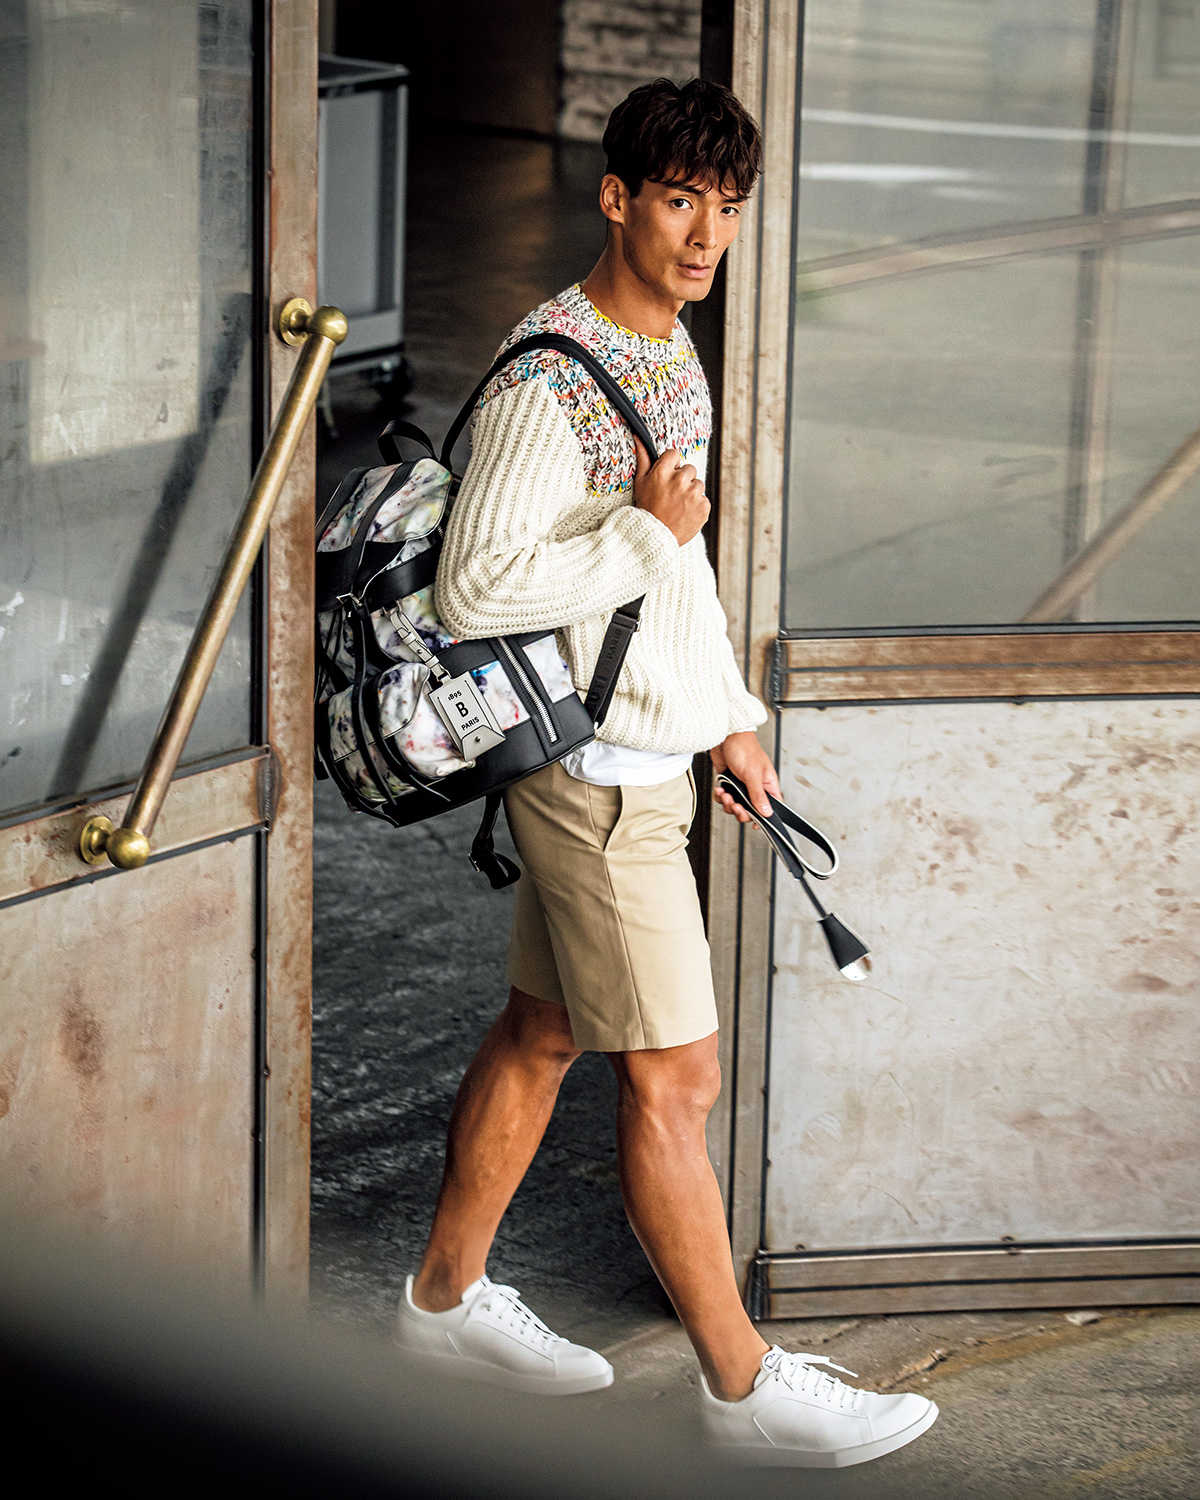 プロサッカー選手 槙野智章が着る今季の ベルルッティ 大人のお洒落心をソソるシンプルさと上質感 Fashion Safari Online